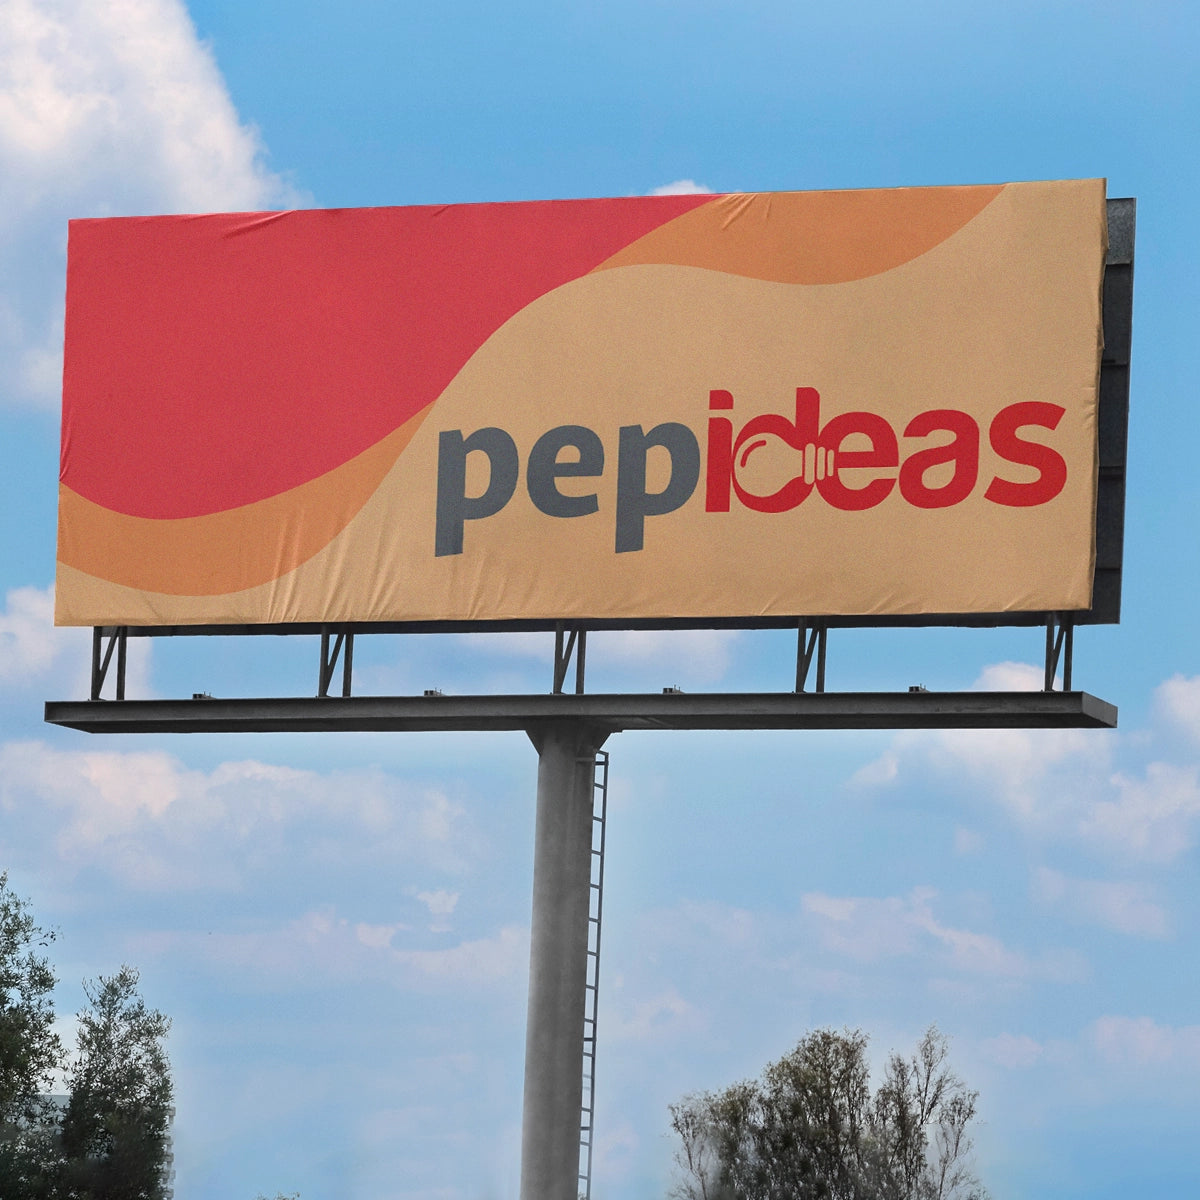 pepideas.com